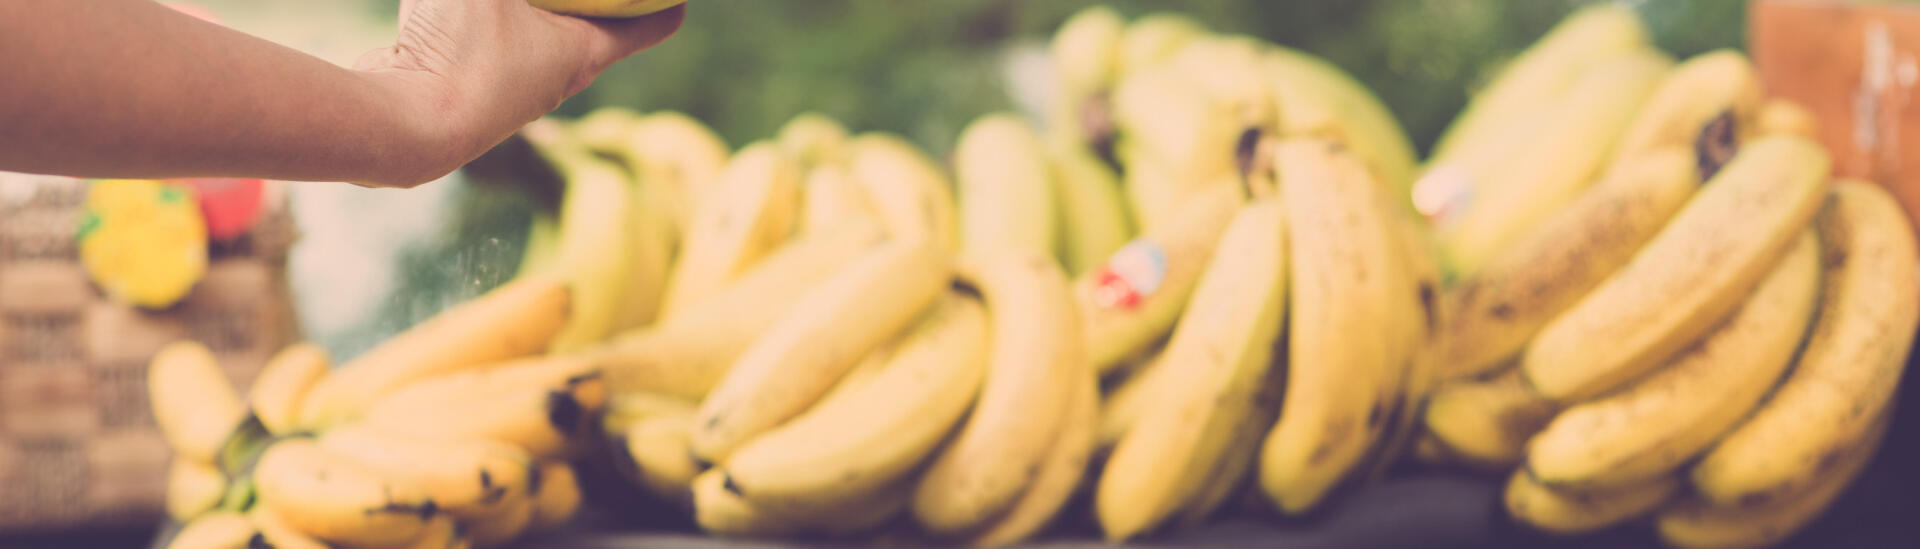 La banane : ses calories, ses bienfaits, et bien plus encore !